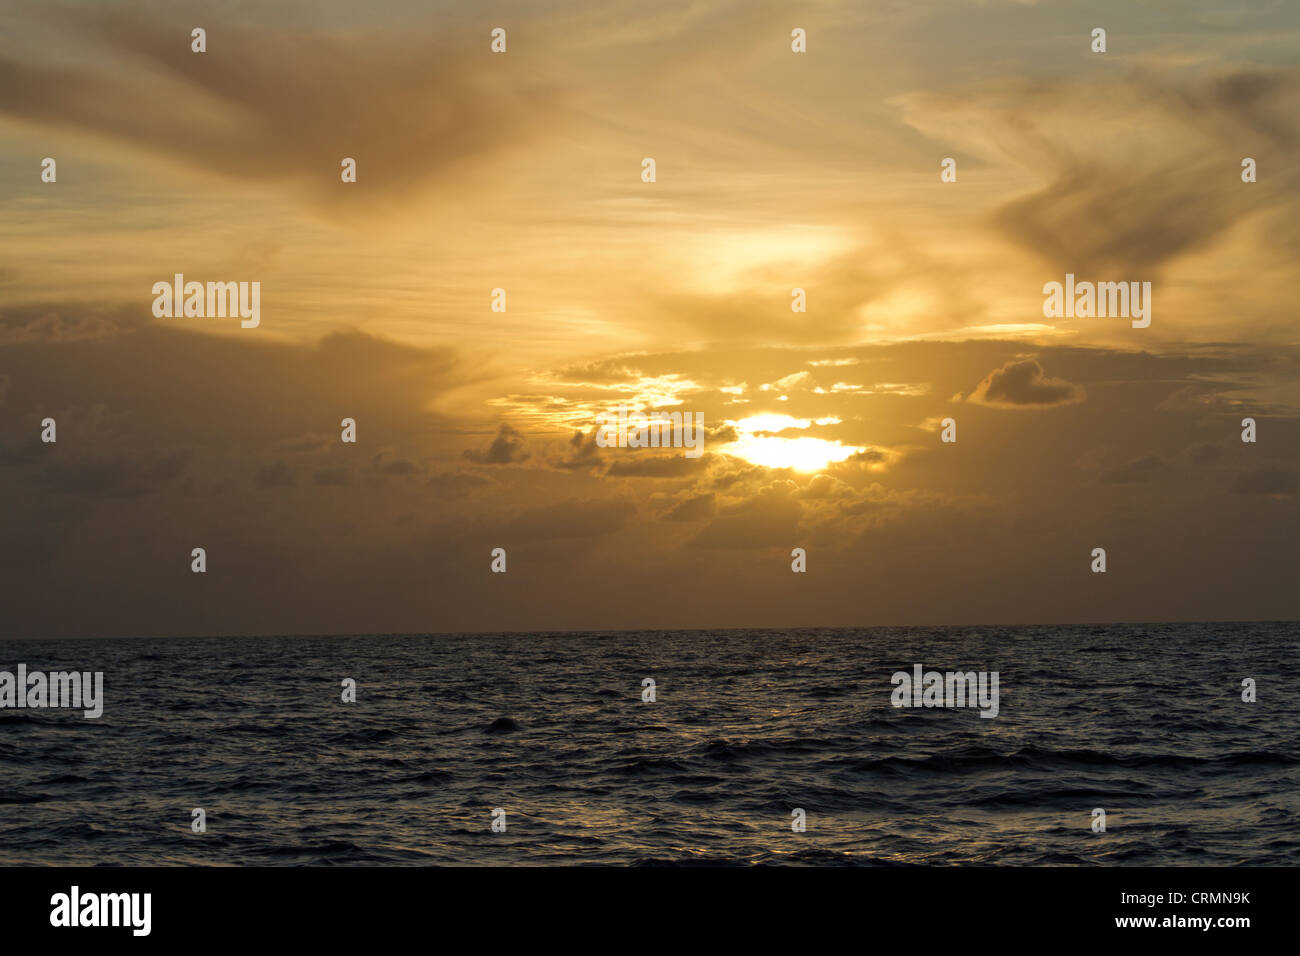 A Herz - geformte Wolke wird hervorgehoben durch einen Sonnenuntergang am Meer. Stockfoto